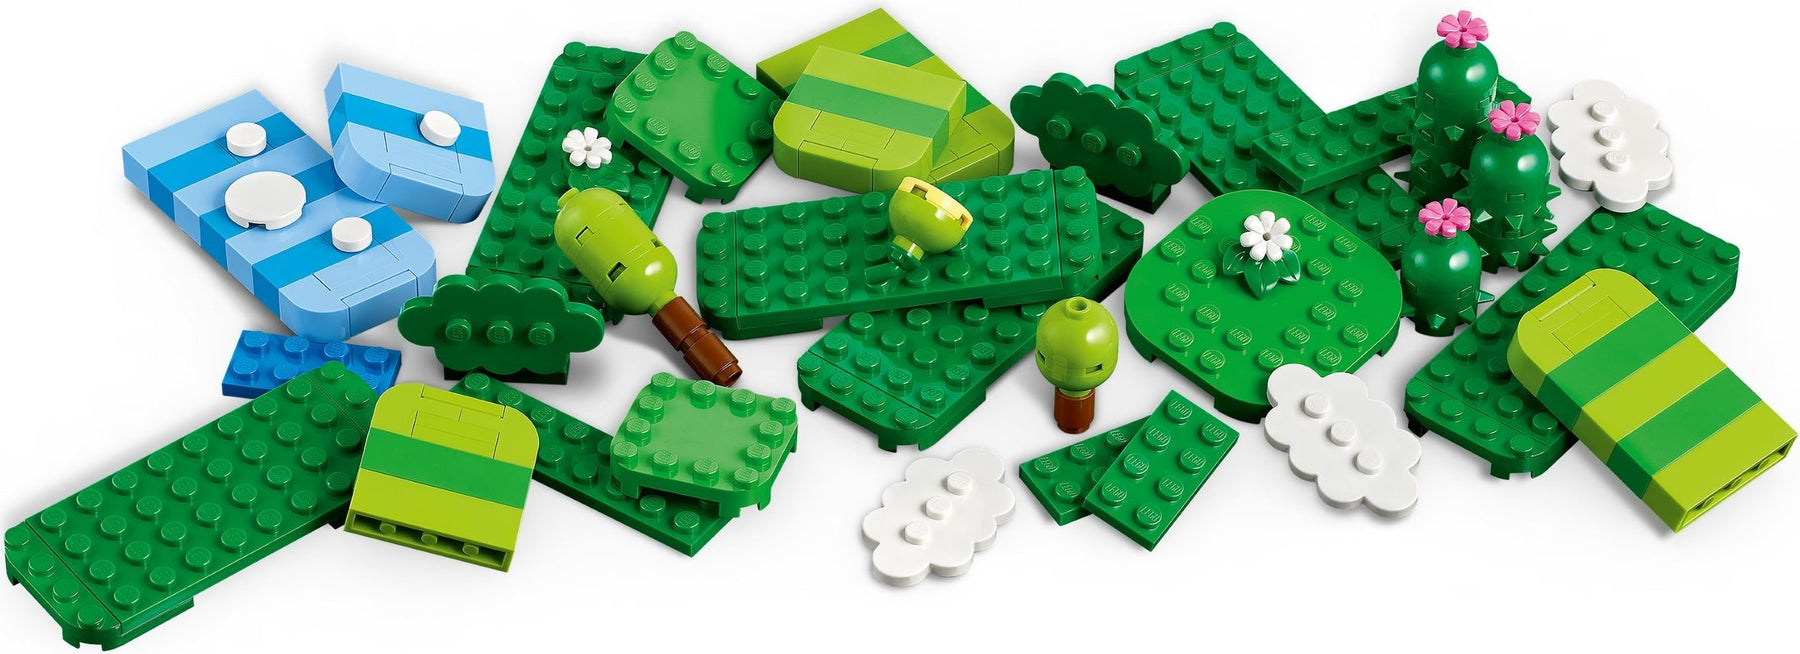 LEGO Super Mario 71418 Luovuuden Työkalupakki